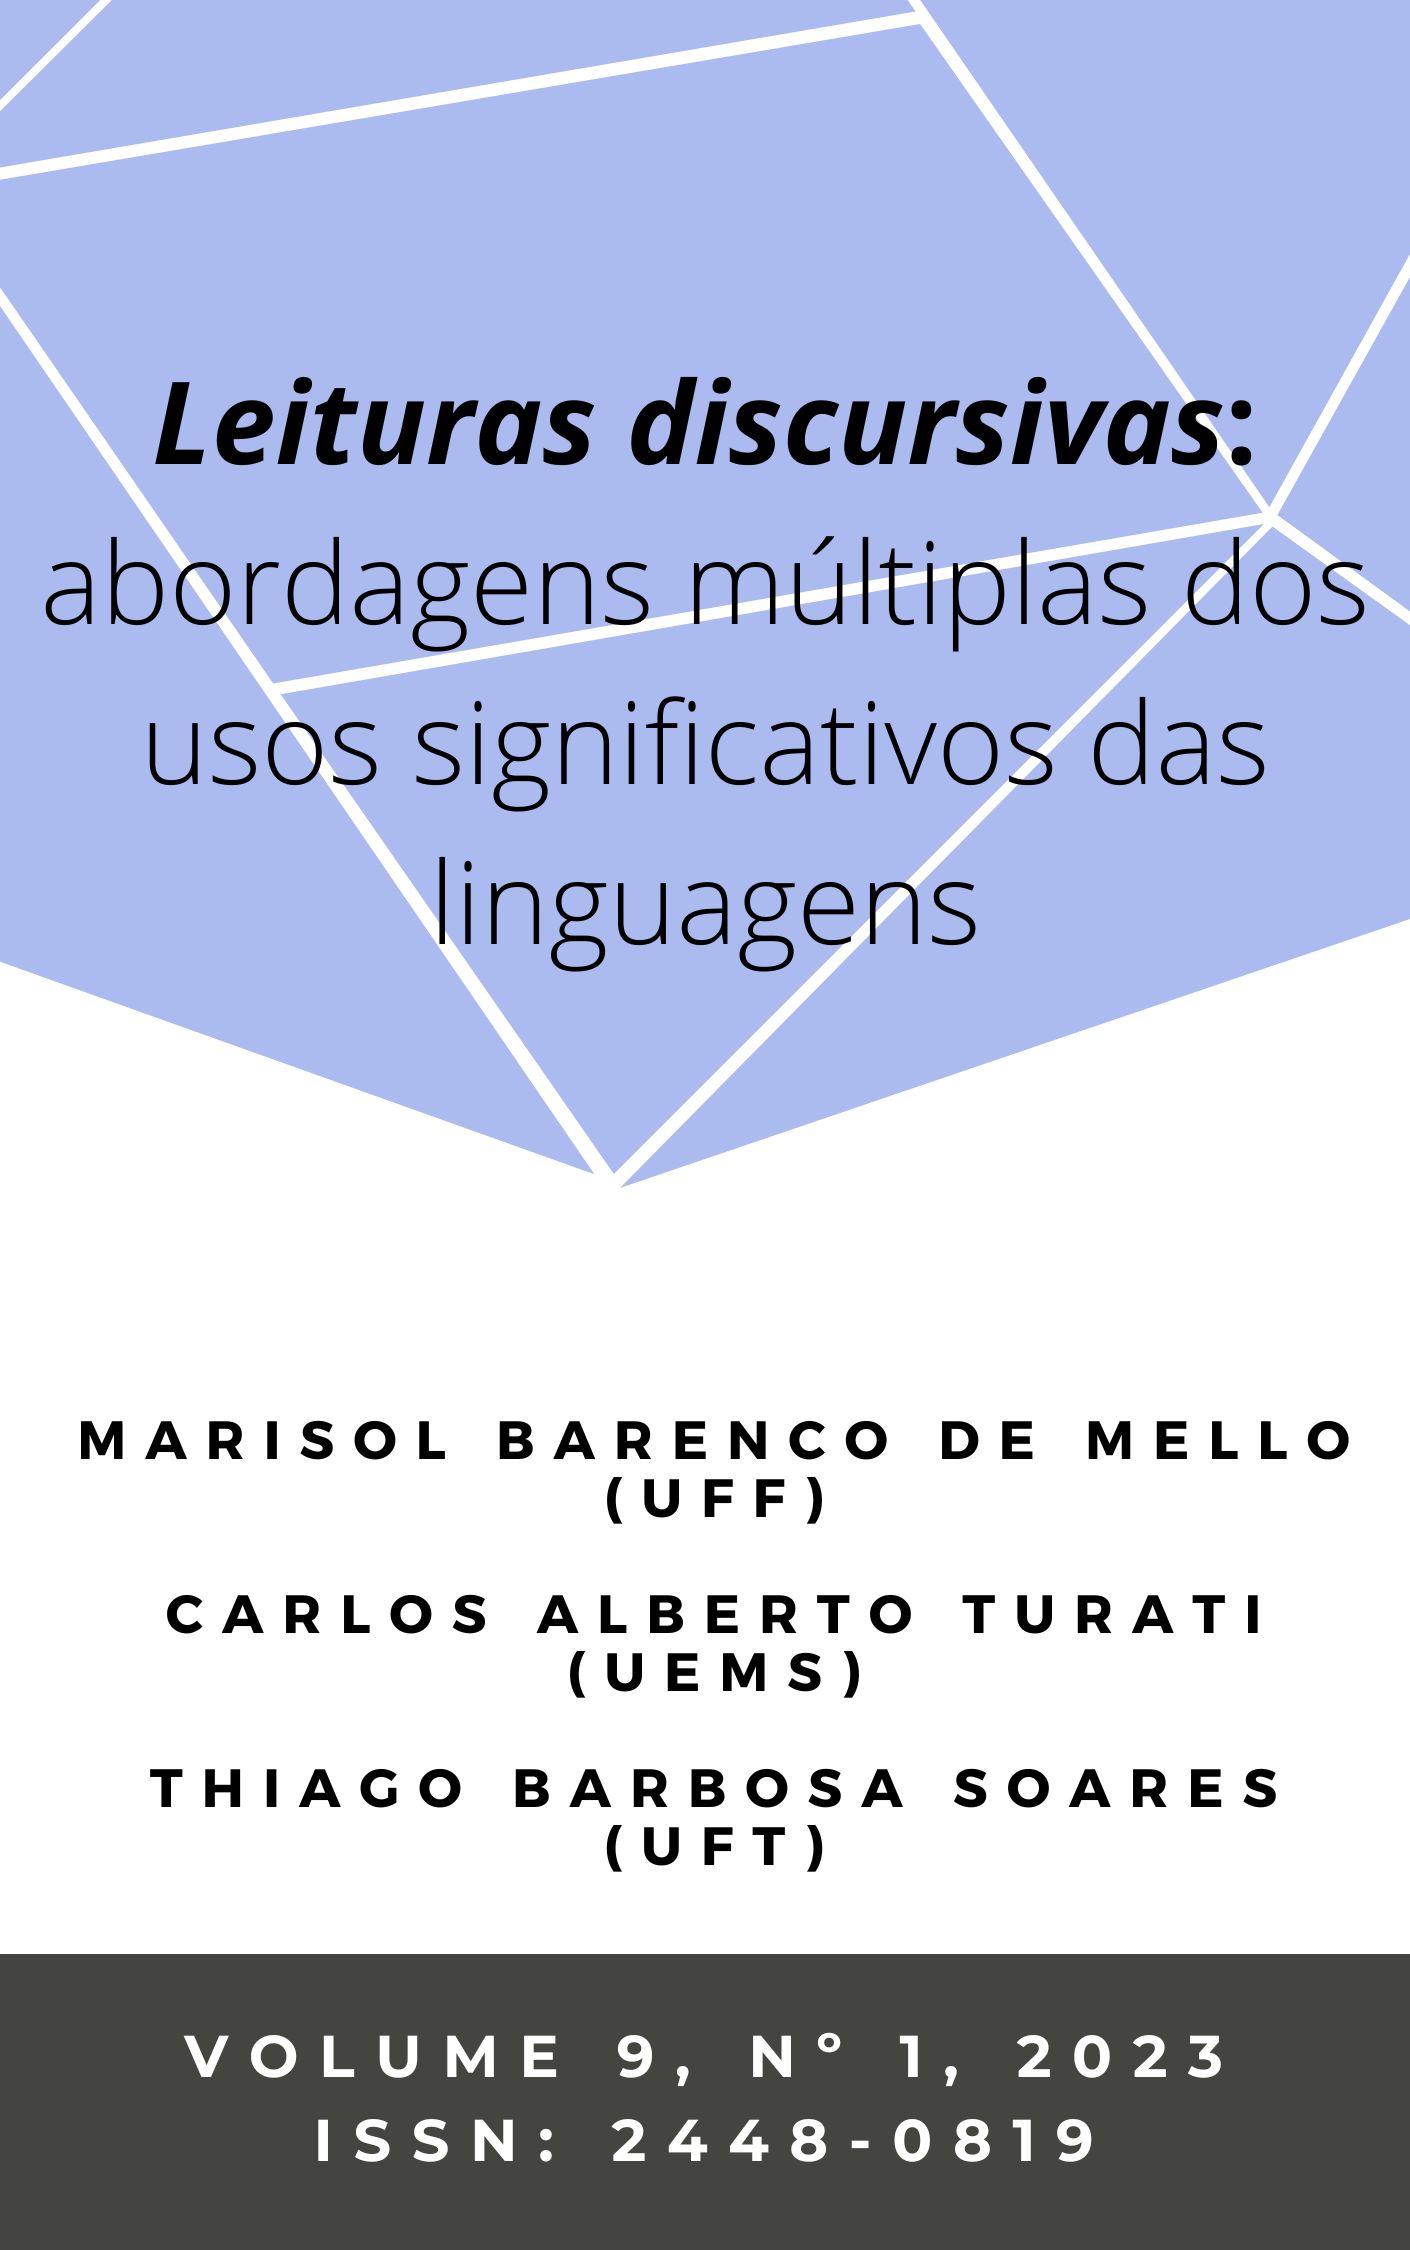 					Visualizar v. 9 n. 1 (2023): Leituras discursivas: abordagens múltiplas dos usos significativos das linguagens
				